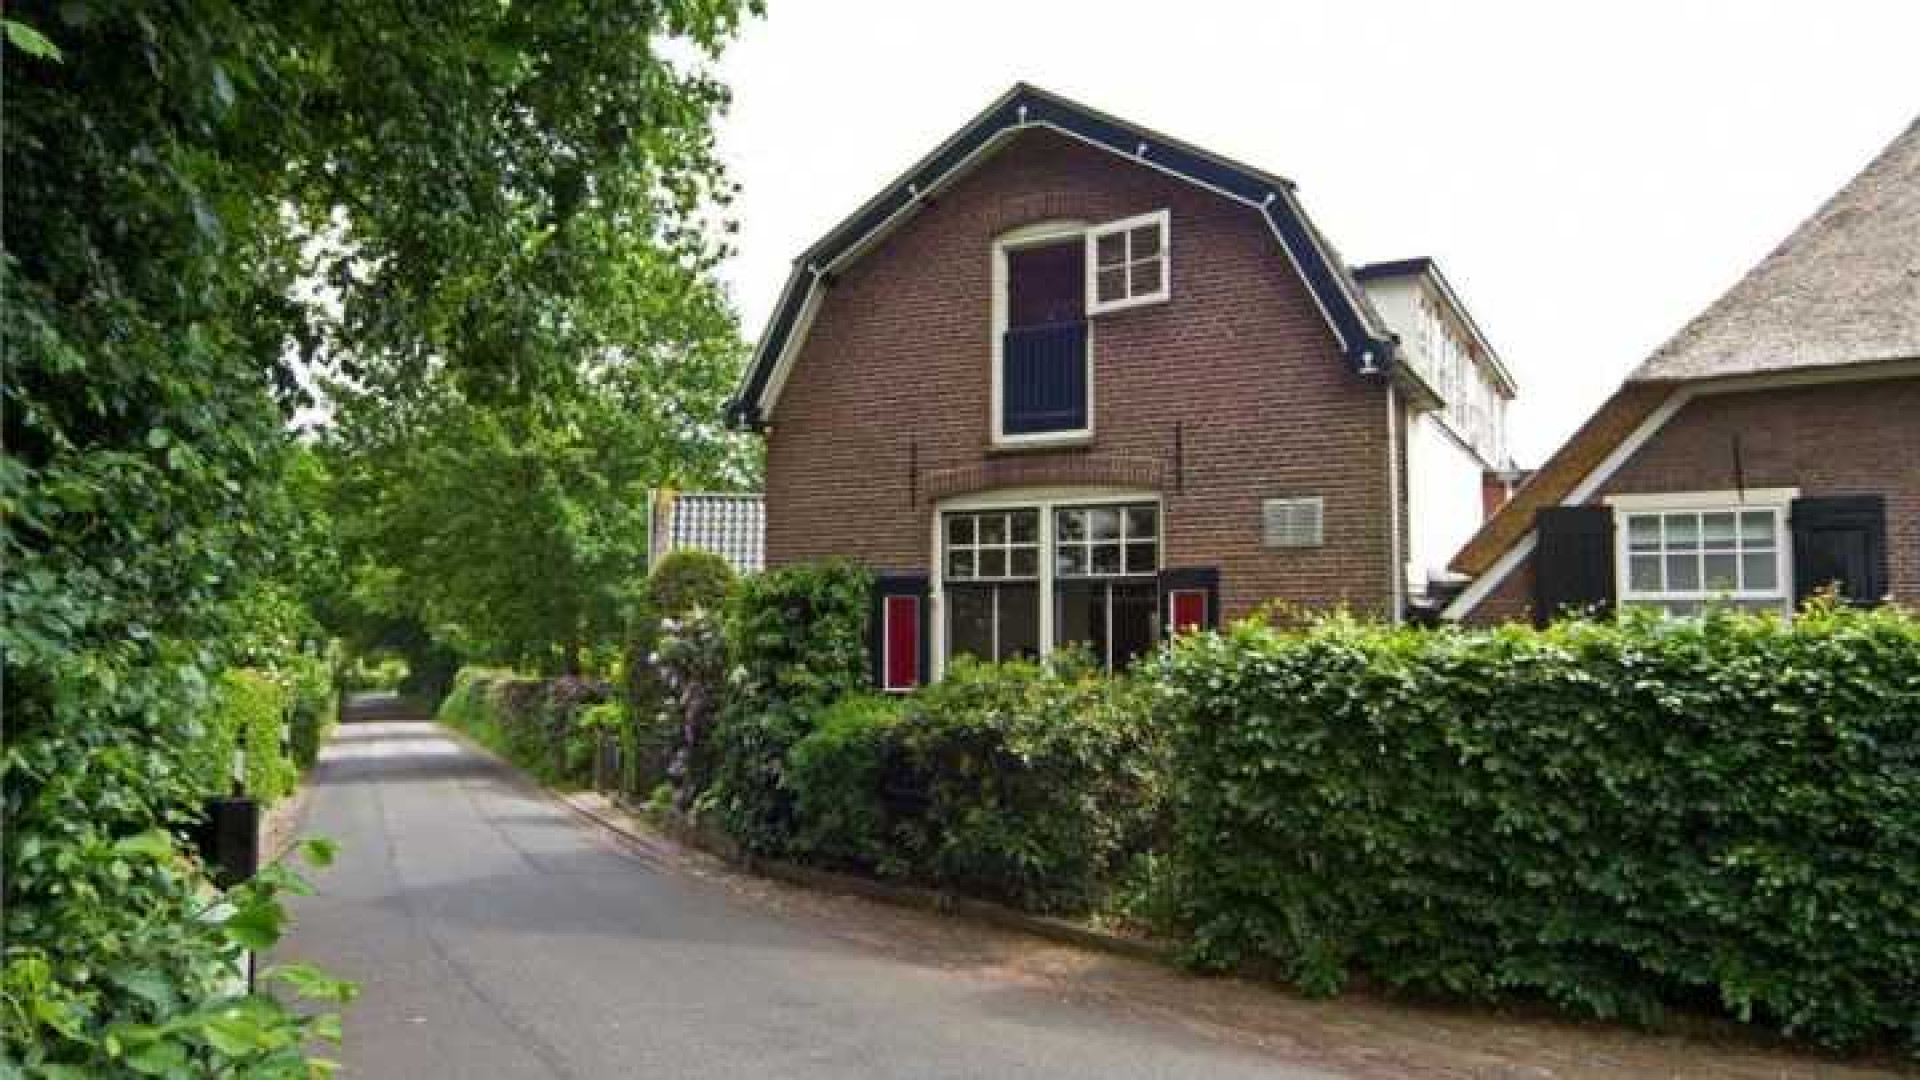 Herman van Veen verlaagt vraagprijs van zijn huis. Zie foto's